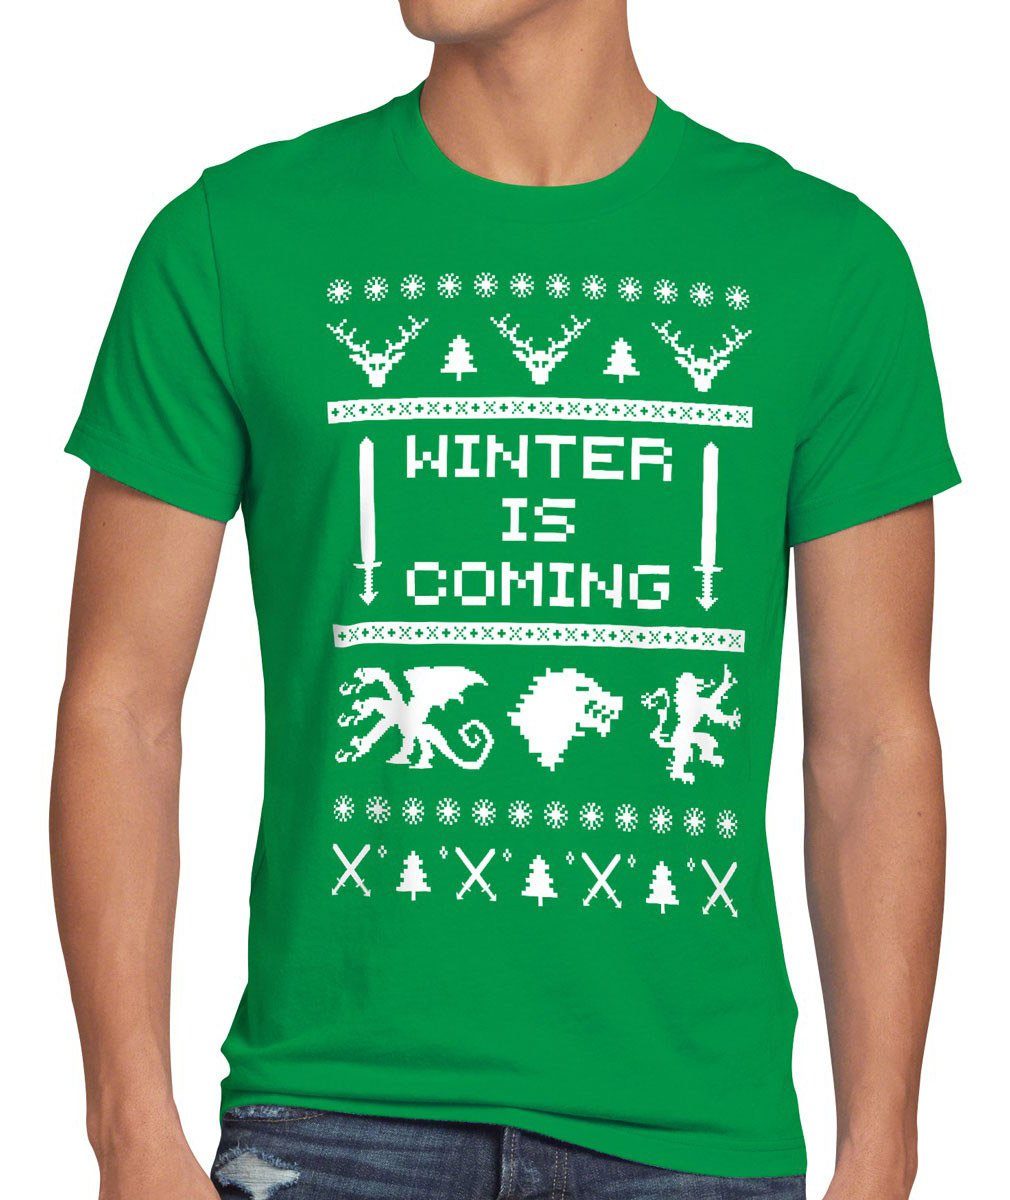 stark 8-Bit is Print-Shirt lennister game grün T-Shirt thrones Winter style3 got Herren schnee coming of